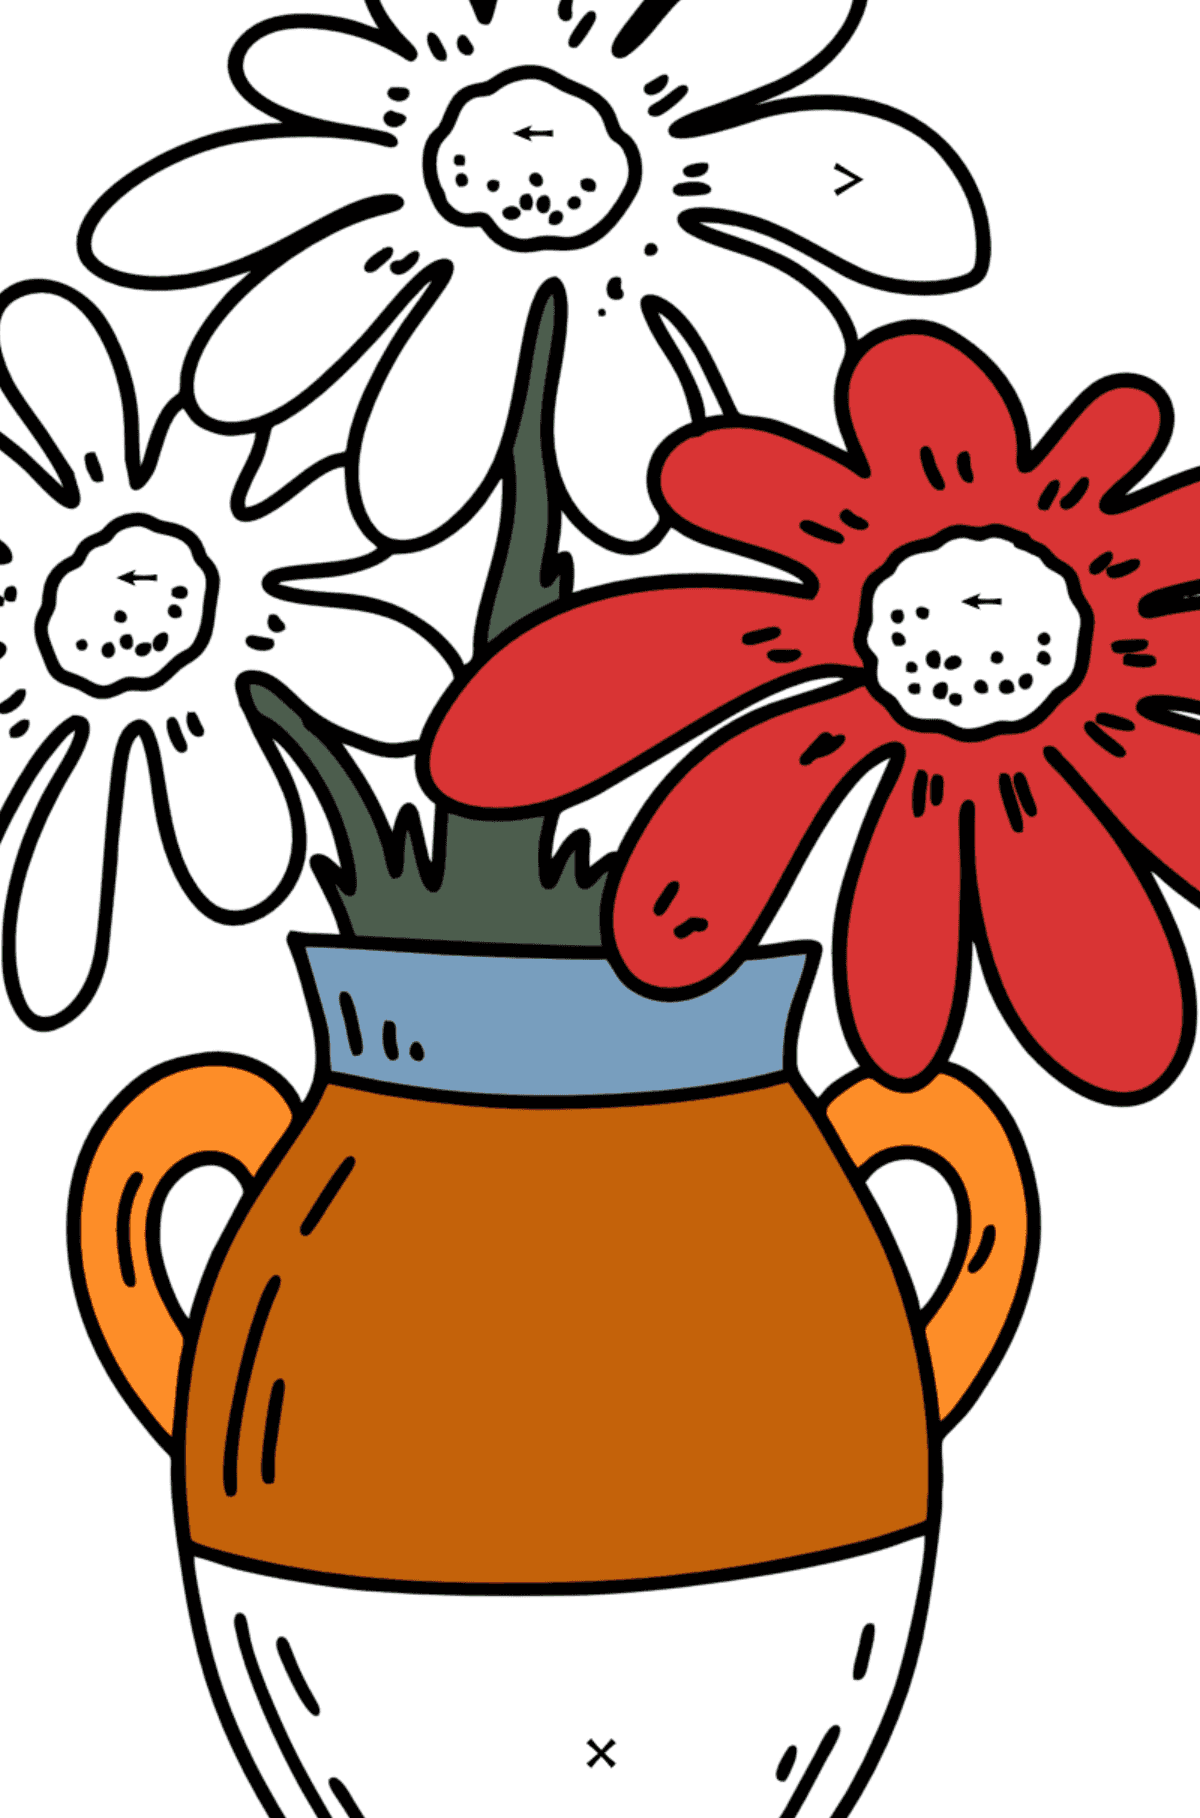 Dibujo para colorear de verano - Flores en un jarrón - Colorear por Símbolos para Niños